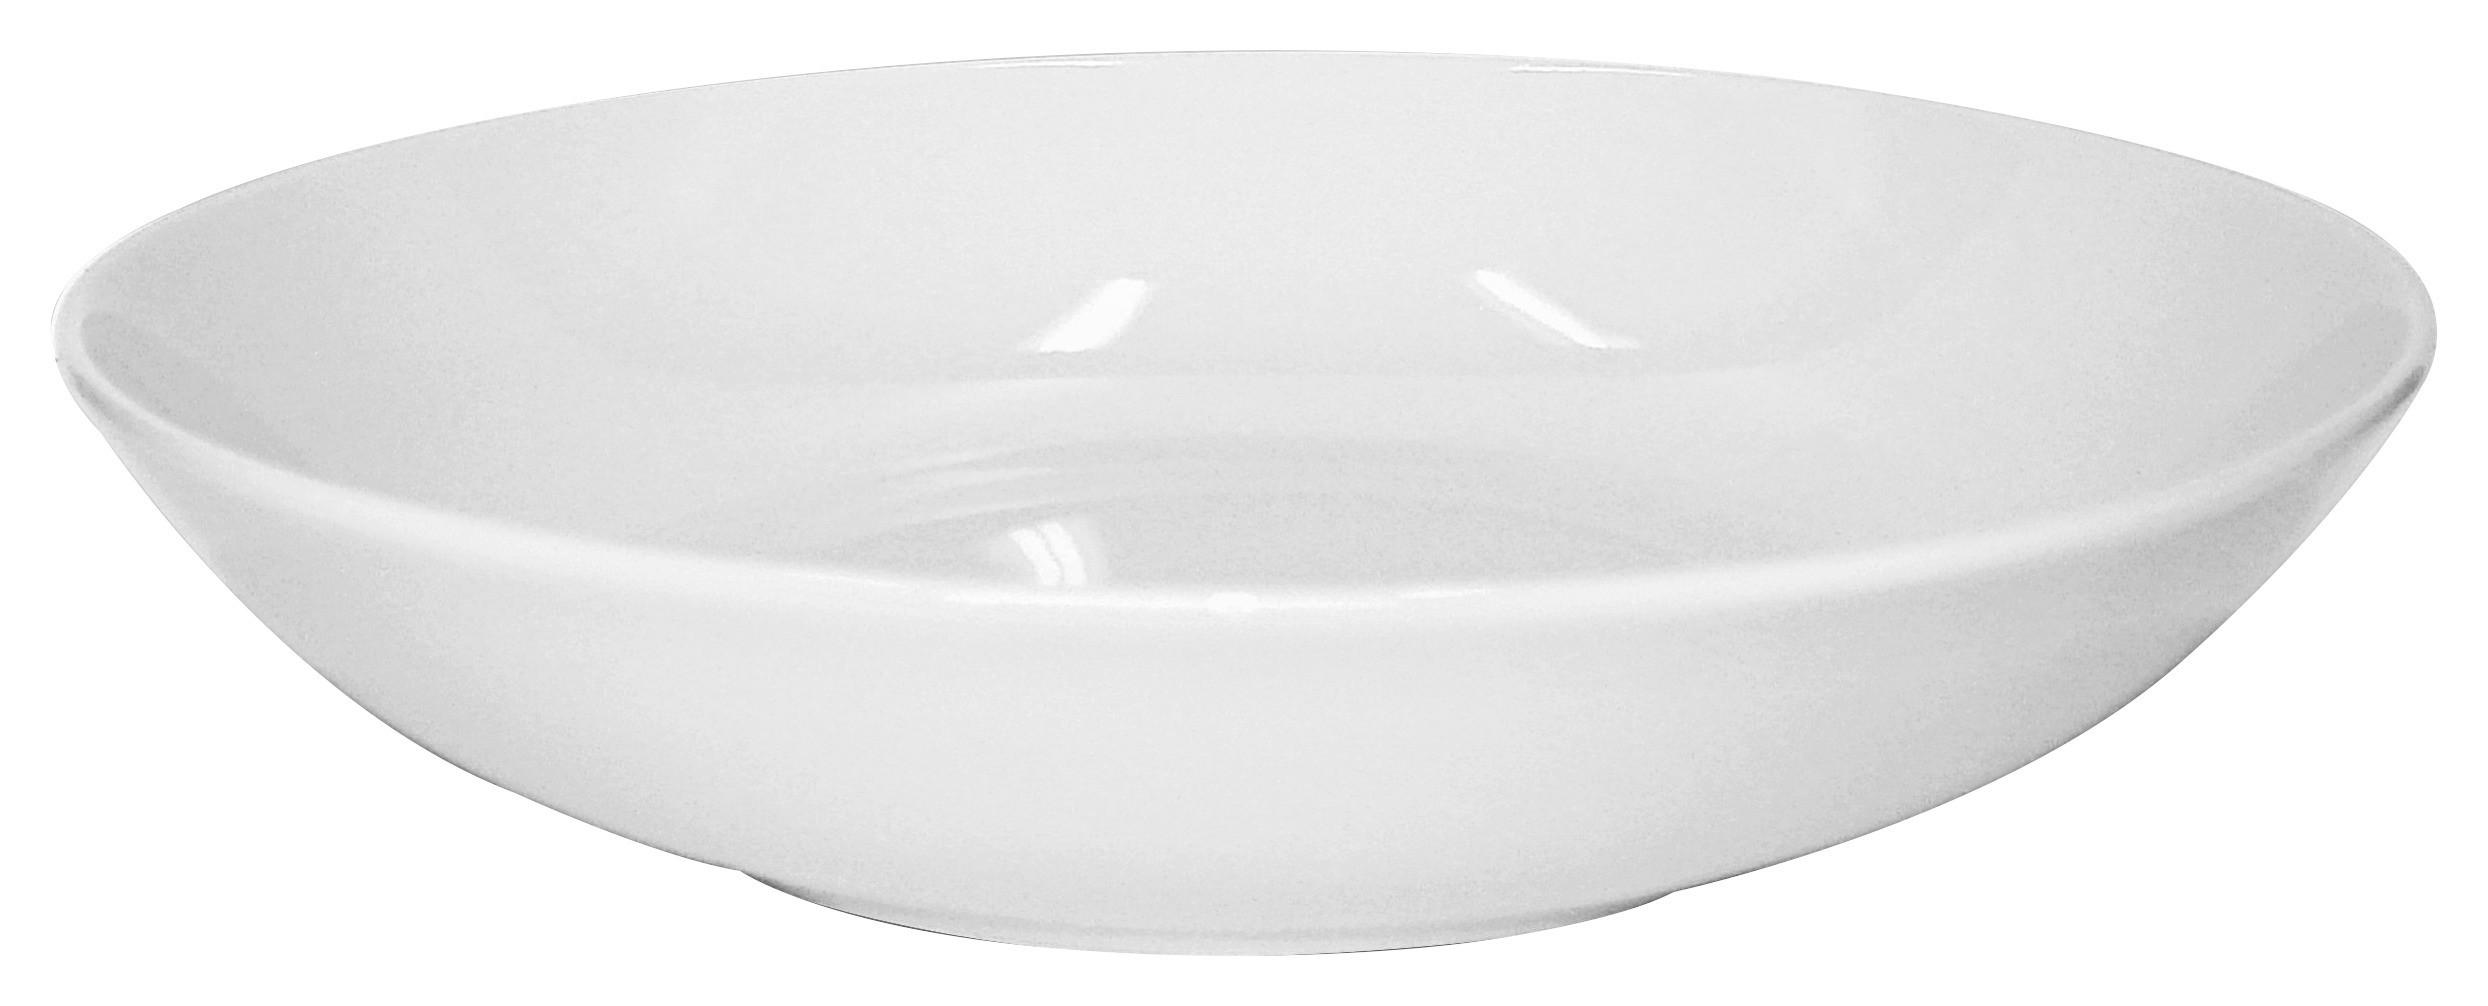 Suppenteller Porzellan Weiß Felicia ca. 20 cm - Weiß, KONVENTIONELL, Keramik (20cm) - Luca Bessoni